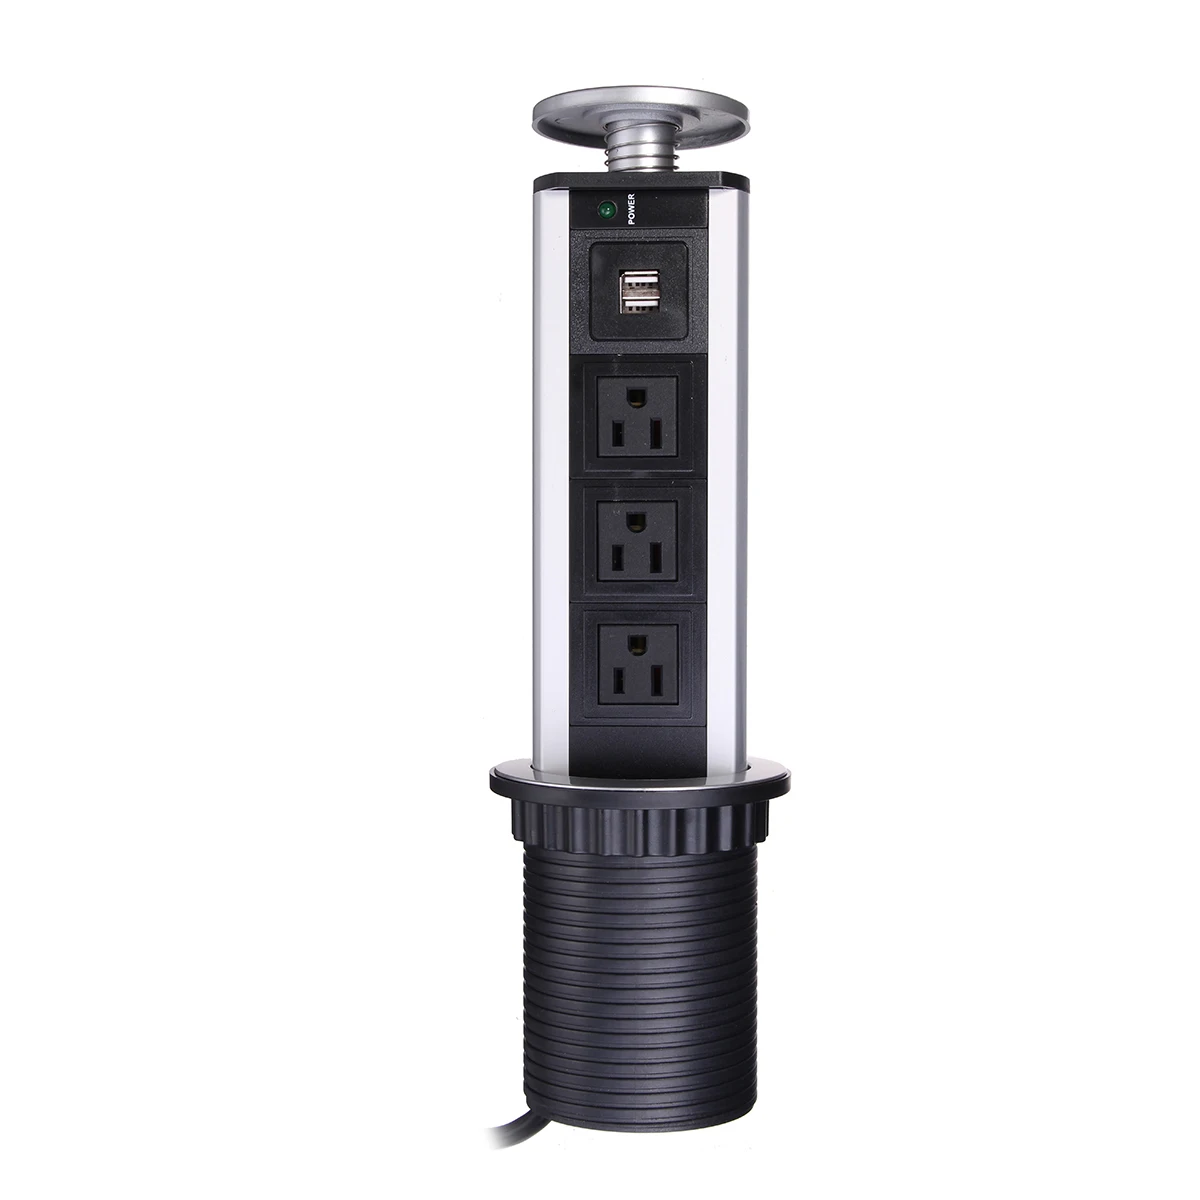 EU/USPlug 3 силовая кухонная настольная электрическая розетка мощность 1 Led+ 2 Зарядка USB алюминиевая полка серебристый/черный